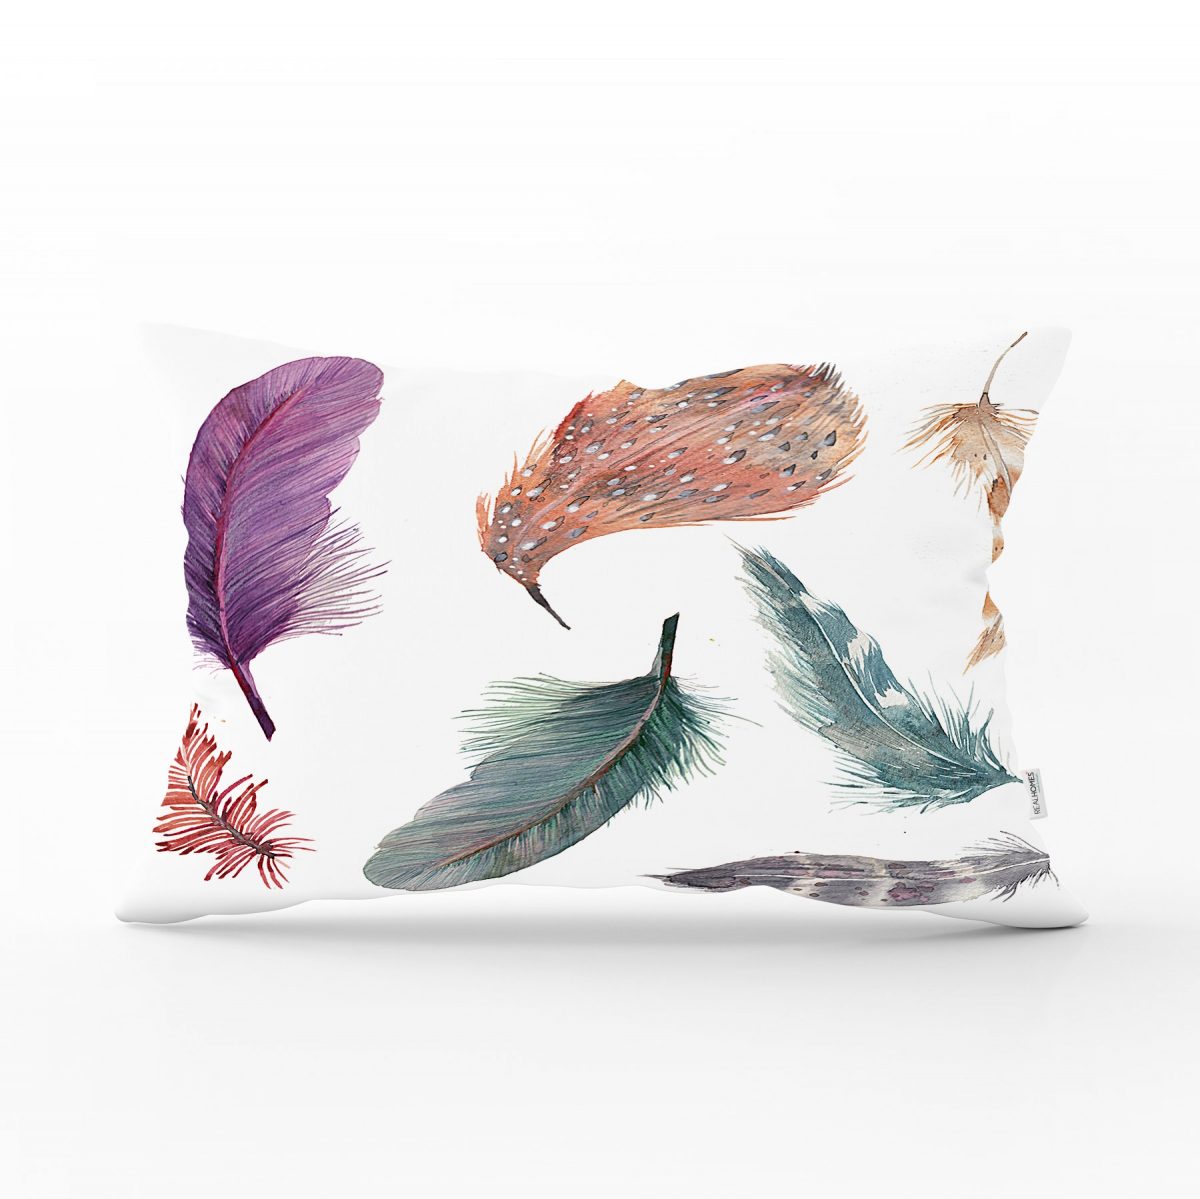 Kuş Tüyü Resimli Dijital Baskılı Dekoratif Dikdörtgen Yastık Kırlent Kılıfı Realhomes